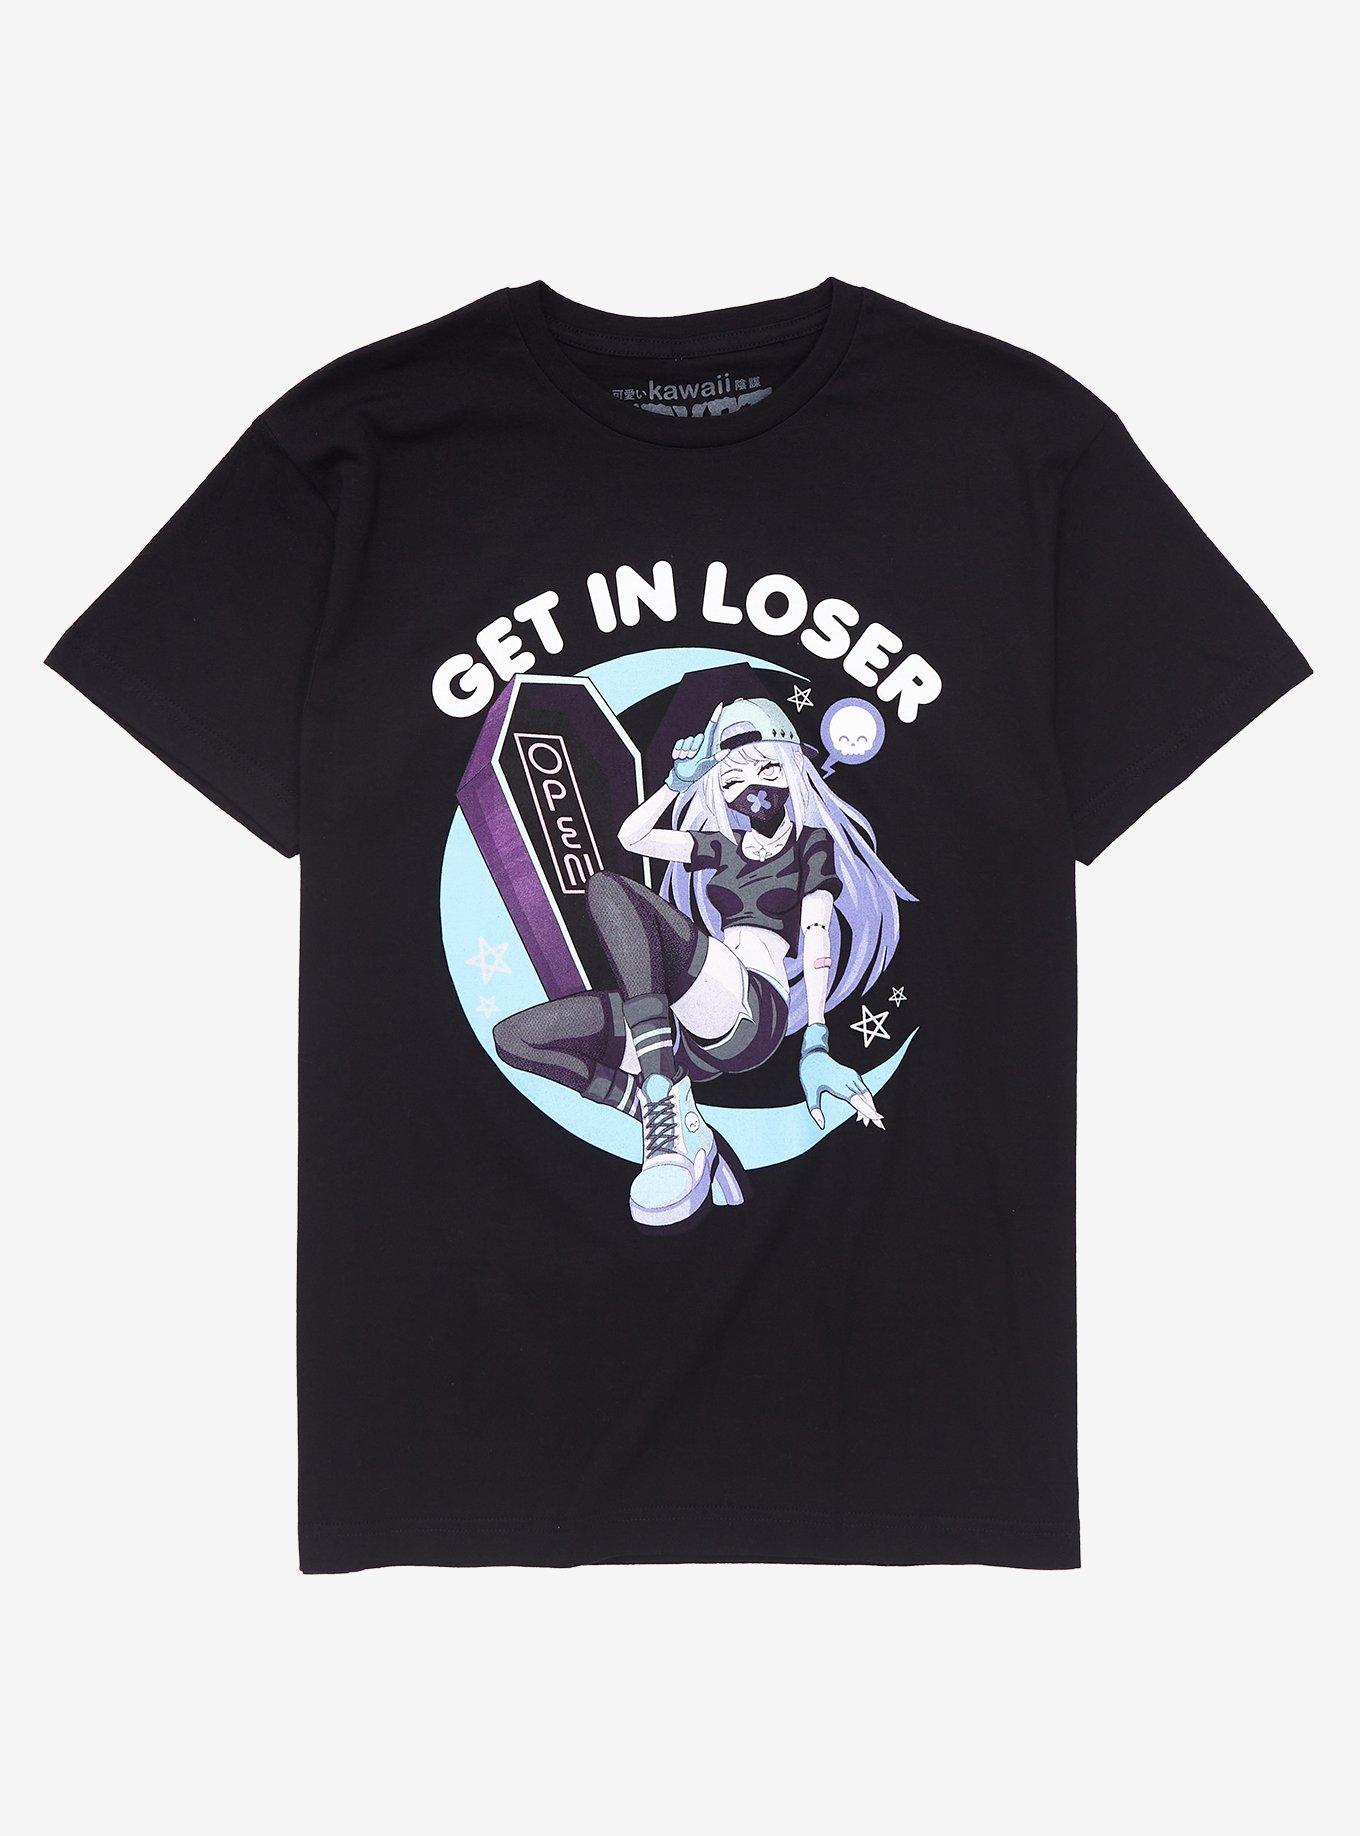 Get In Loser T-Shirt by Kawaii Krpyt, BLACK, hi-res